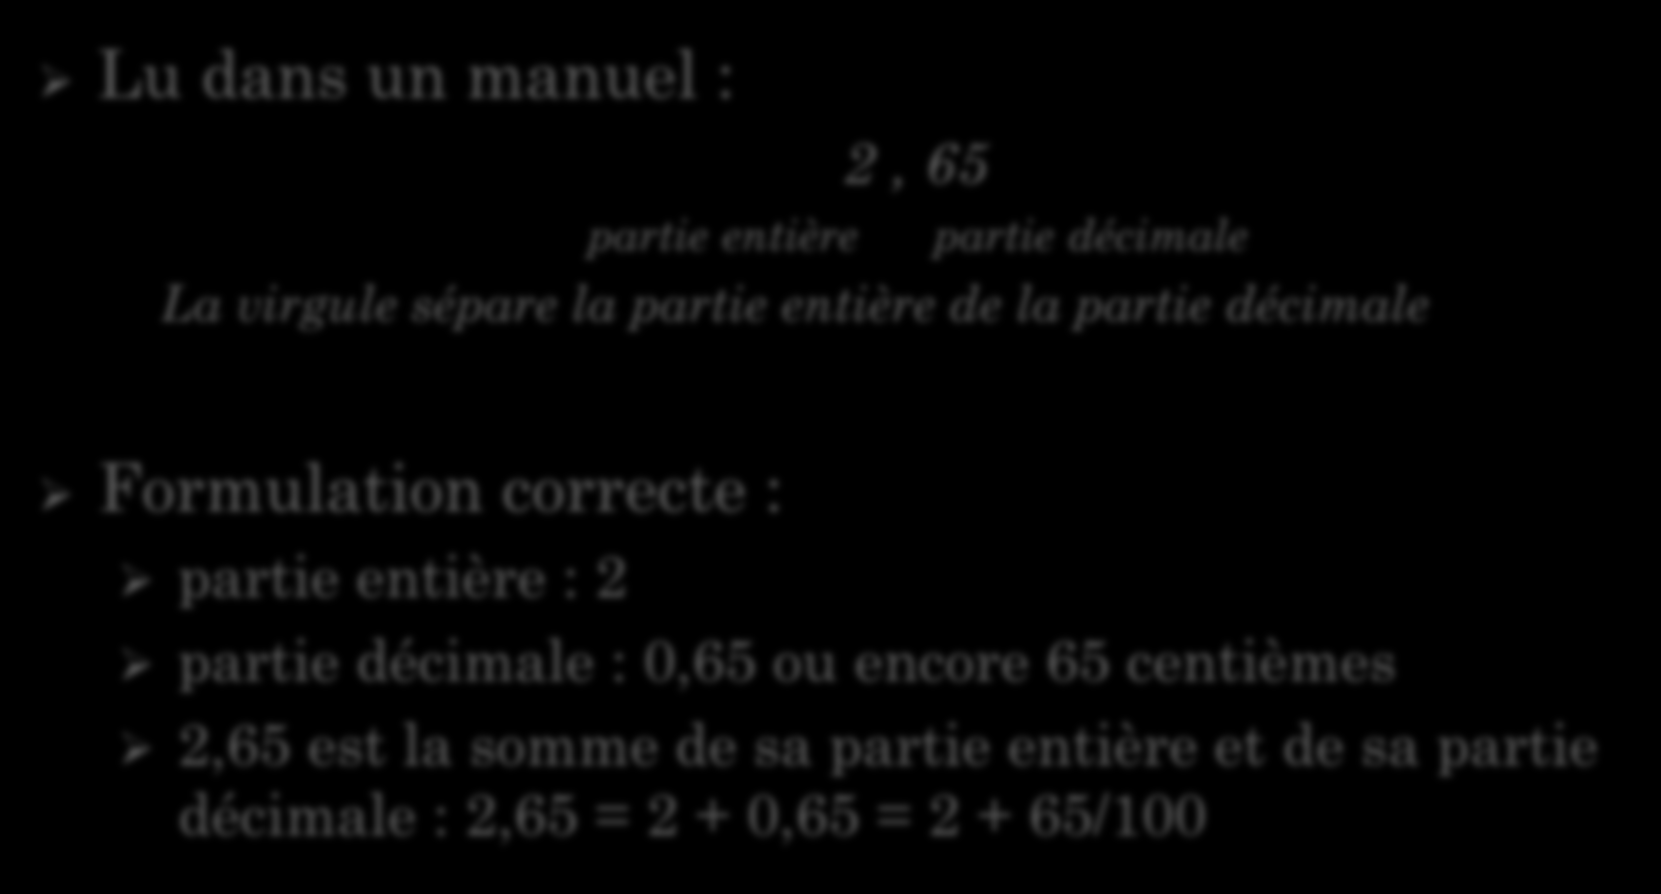 DEUX PRÉCISIONS DE VOCABULAIRE Lu dans un manuel : partie entière 2, 65 partie décimale La virgule sépare la partie entière de la partie décimale Formulation